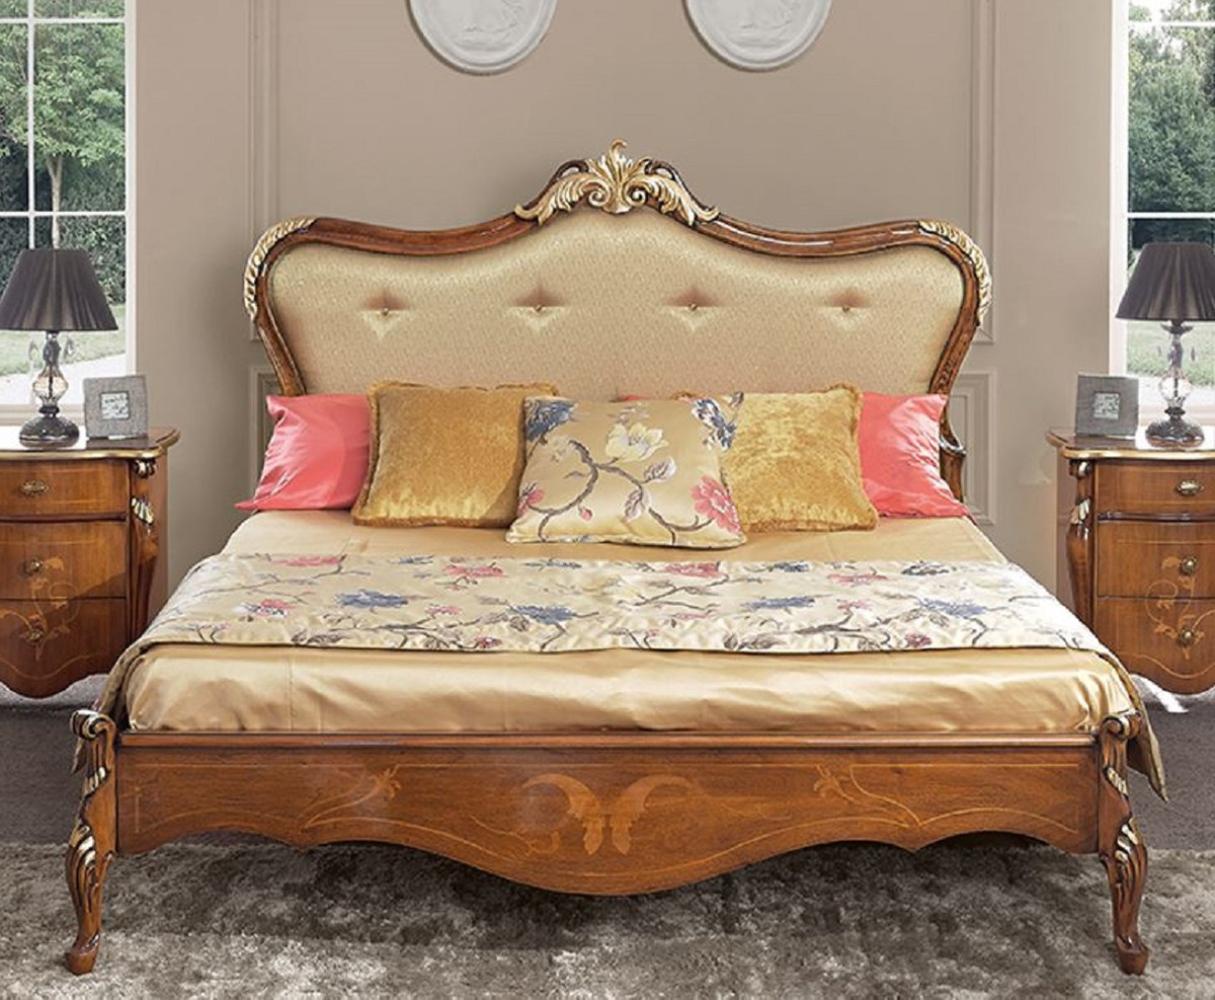 Casa Padrino Luxus Barock Doppelbett Gold / Braun / Gold - Prunkvolles Massivholz Bett im Barockstil - Barock Schlafzimmer & Hotel Möbel - Luxus Qualität - Made in Italy Bild 1